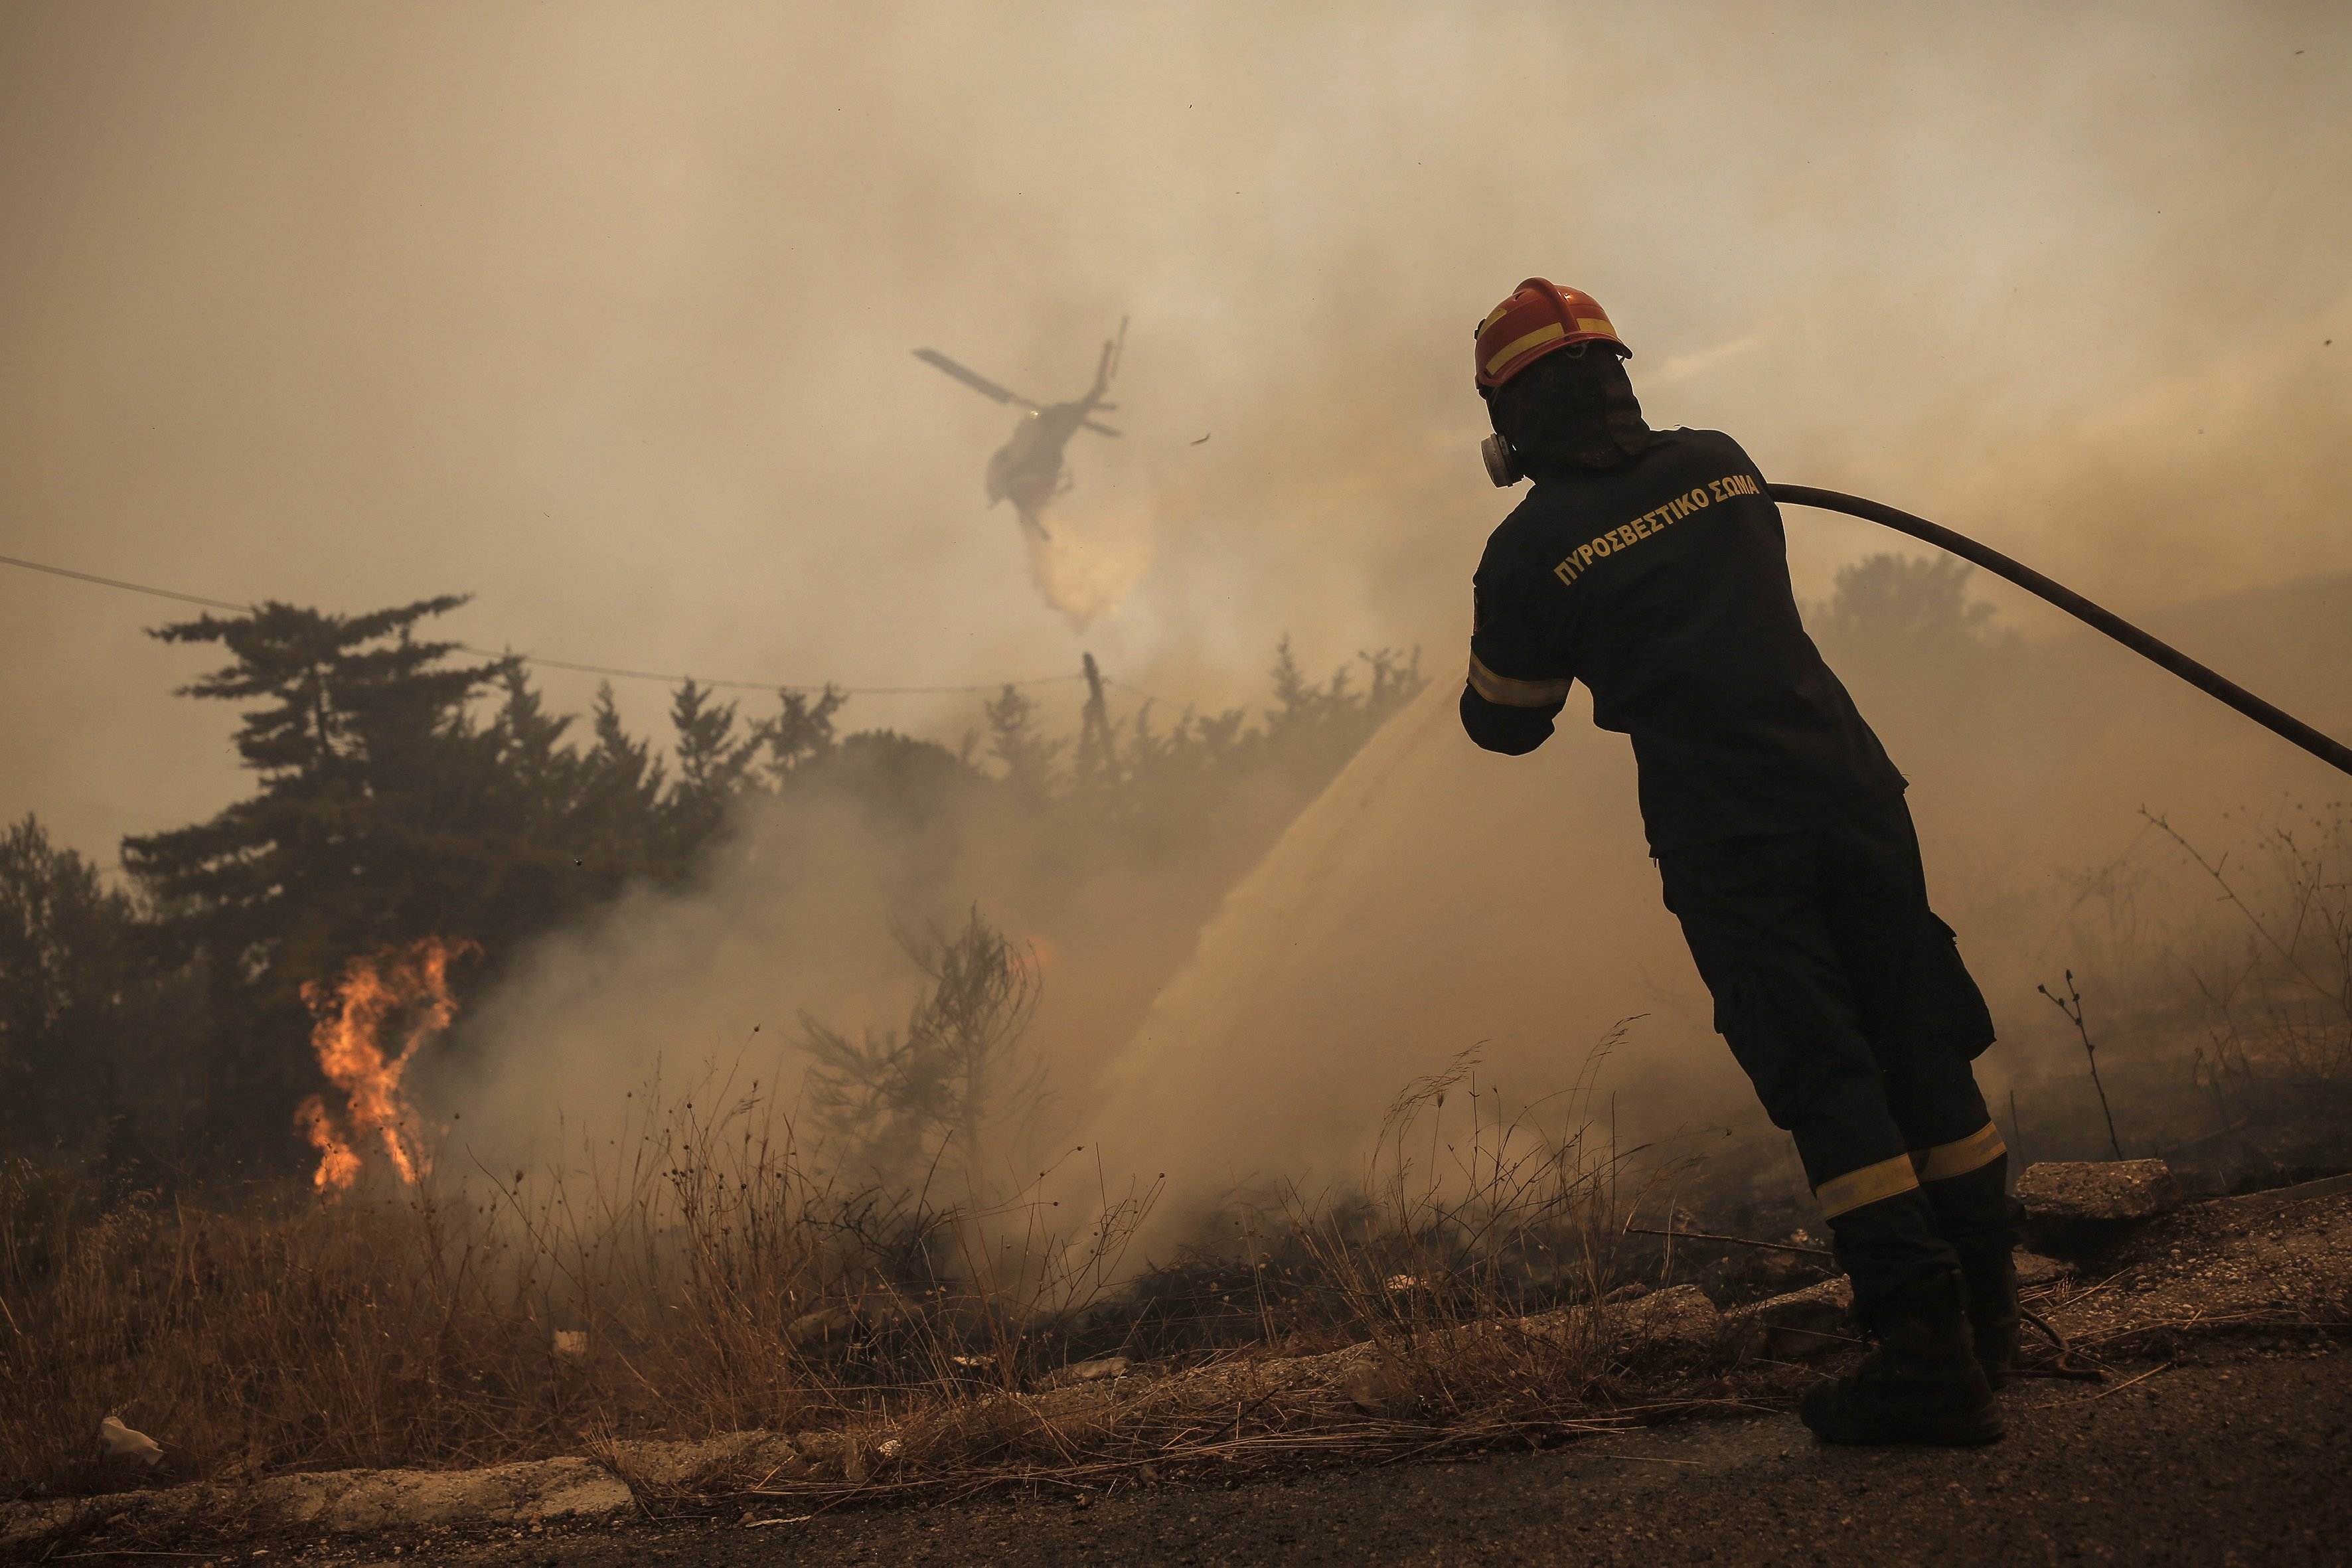 Grecia y los peores incendios en 15 años: piden investigar si hay una organización criminal